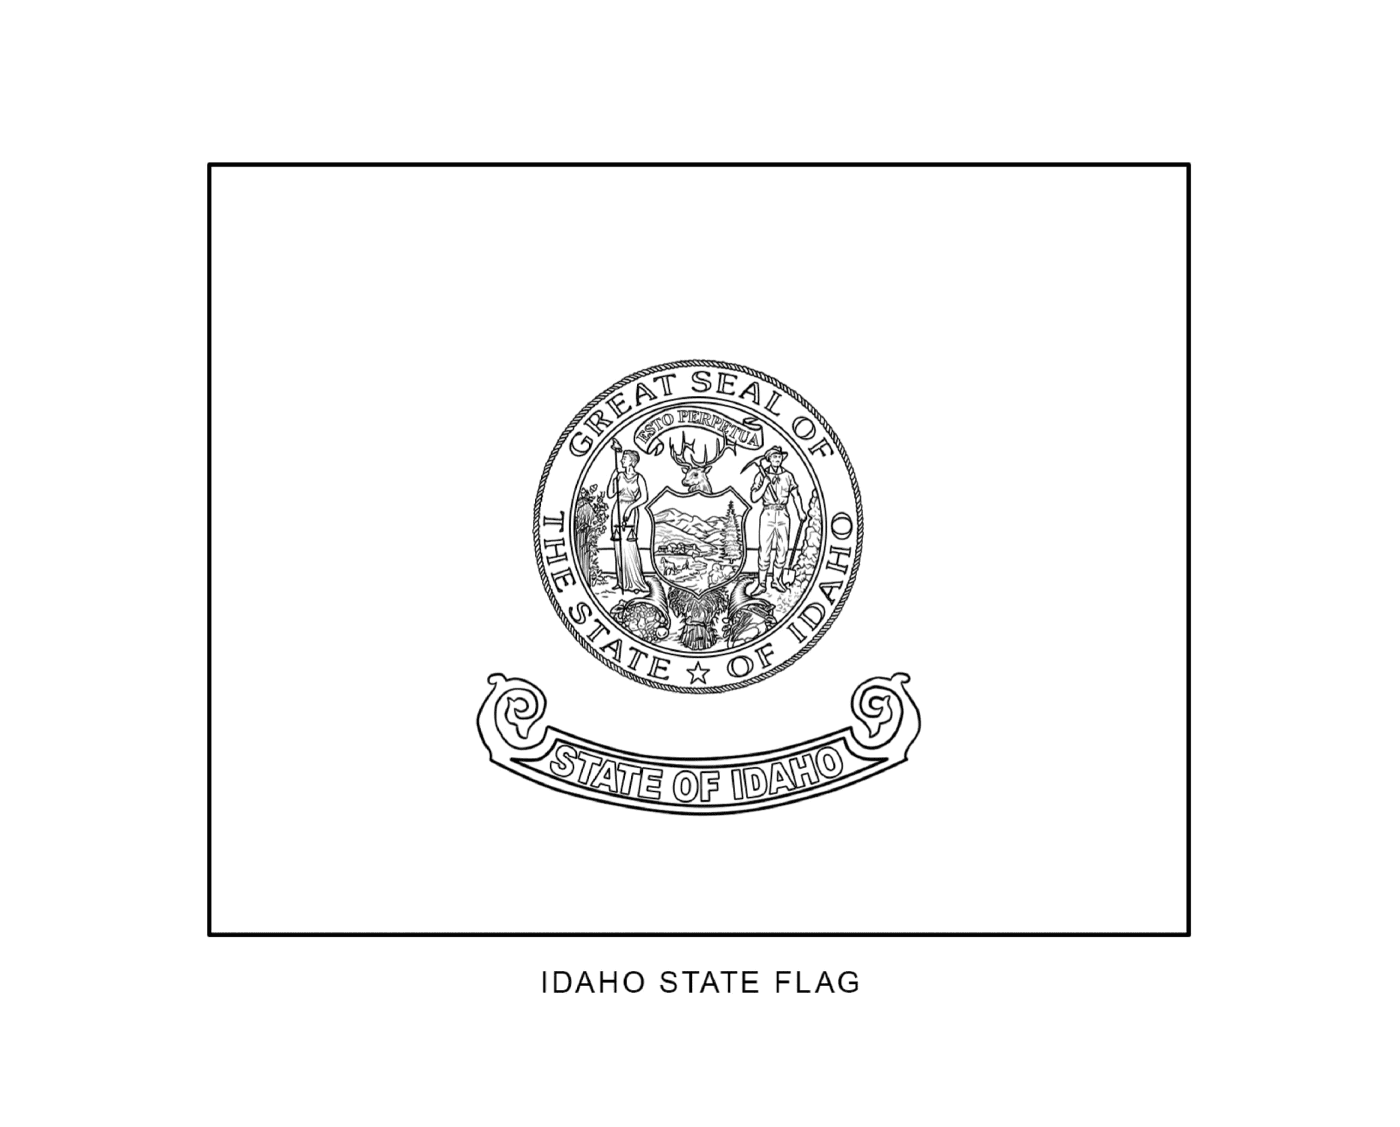  आईडाहो की स्थिति का ध्वज जो चित्रित किया गया है 